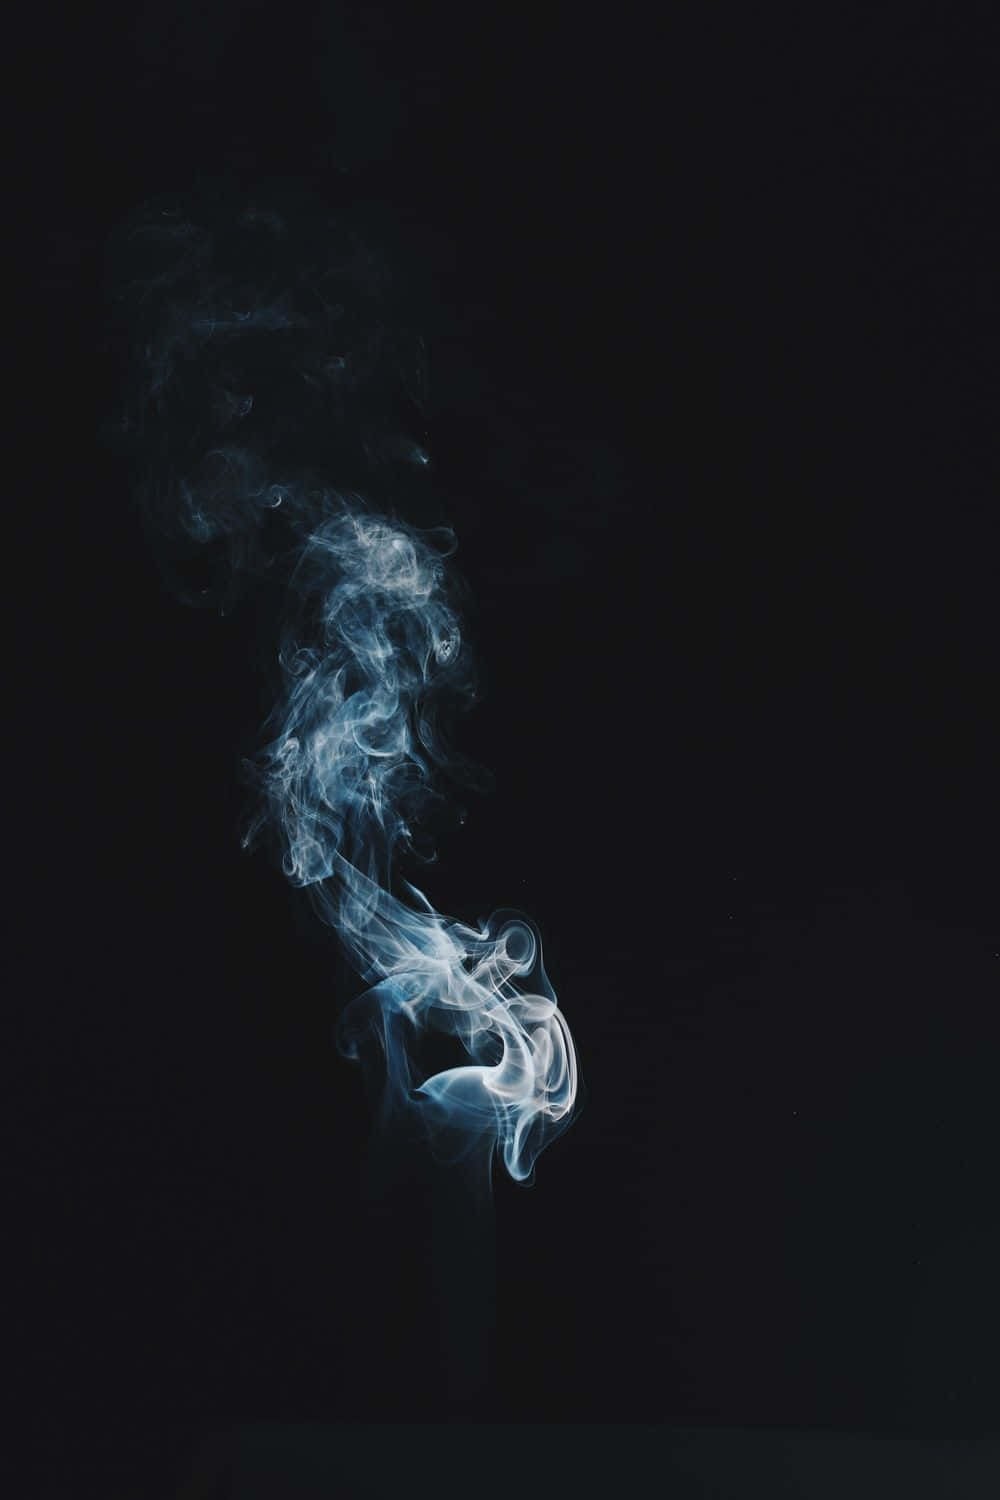 tumblr smoke clouds